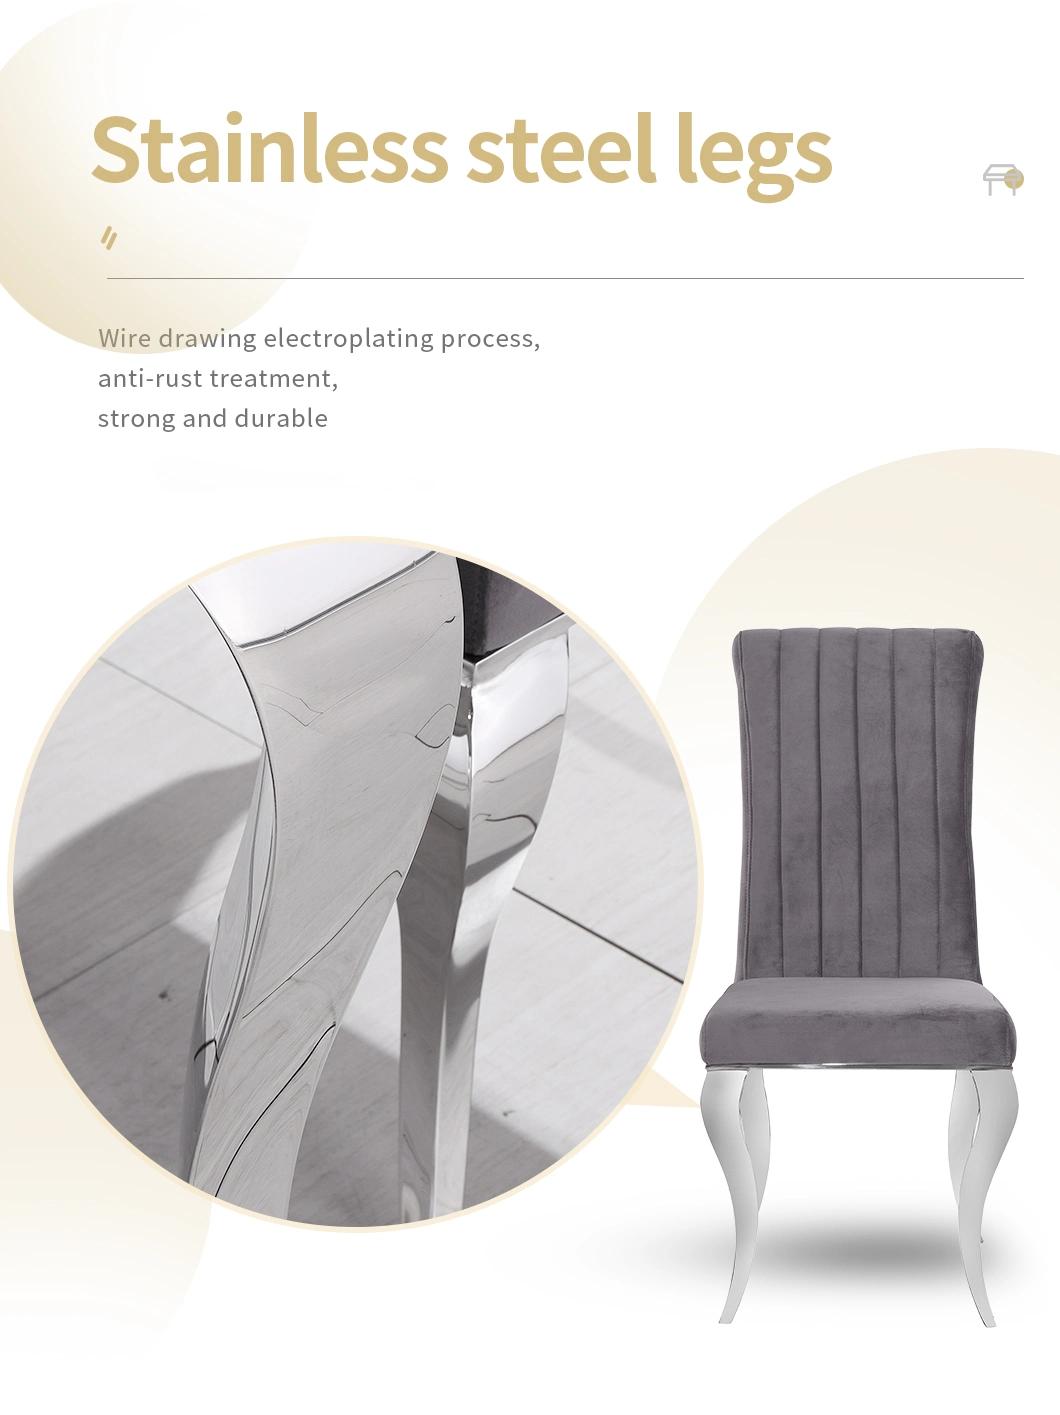 Modern Design Home Velvet Furniture Upholstered Dining Chairs